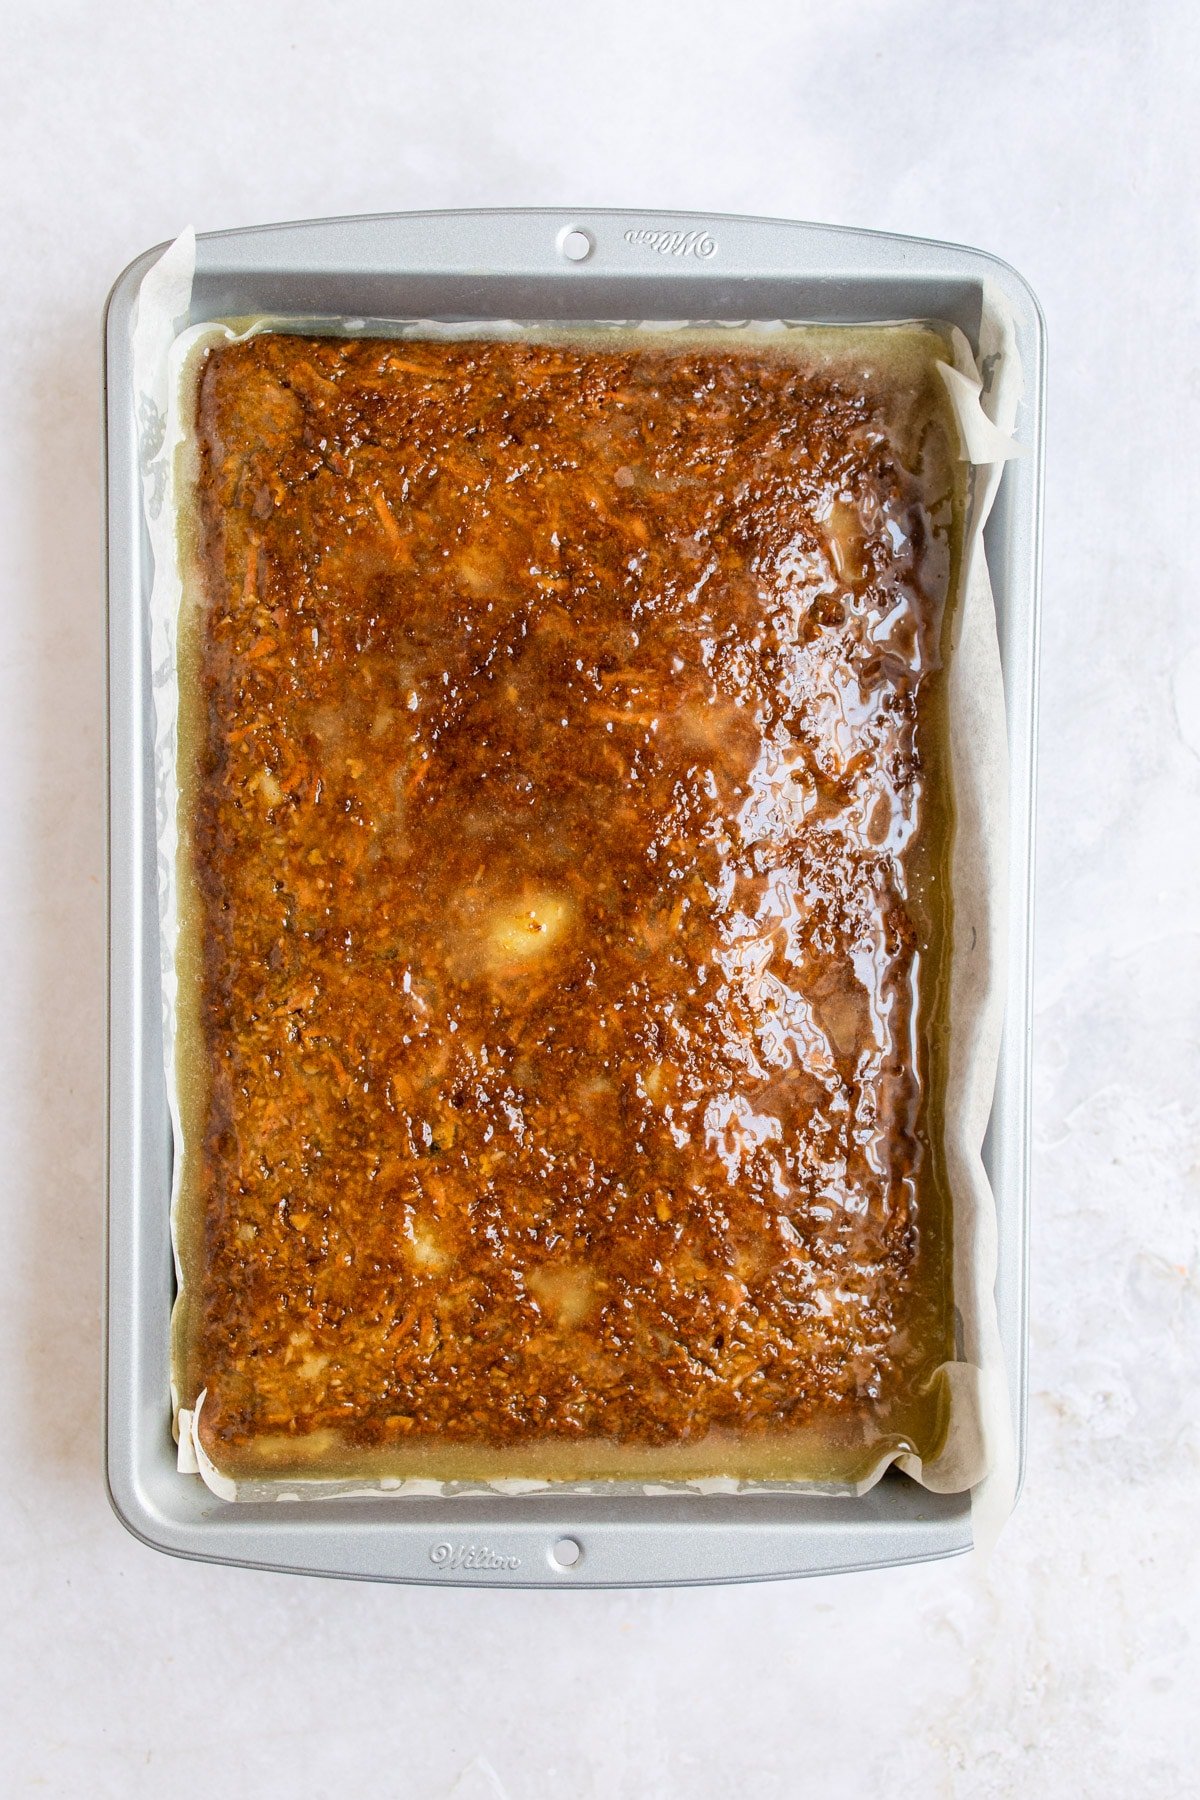 Buttermilk glaze on a carrot sheet cake.